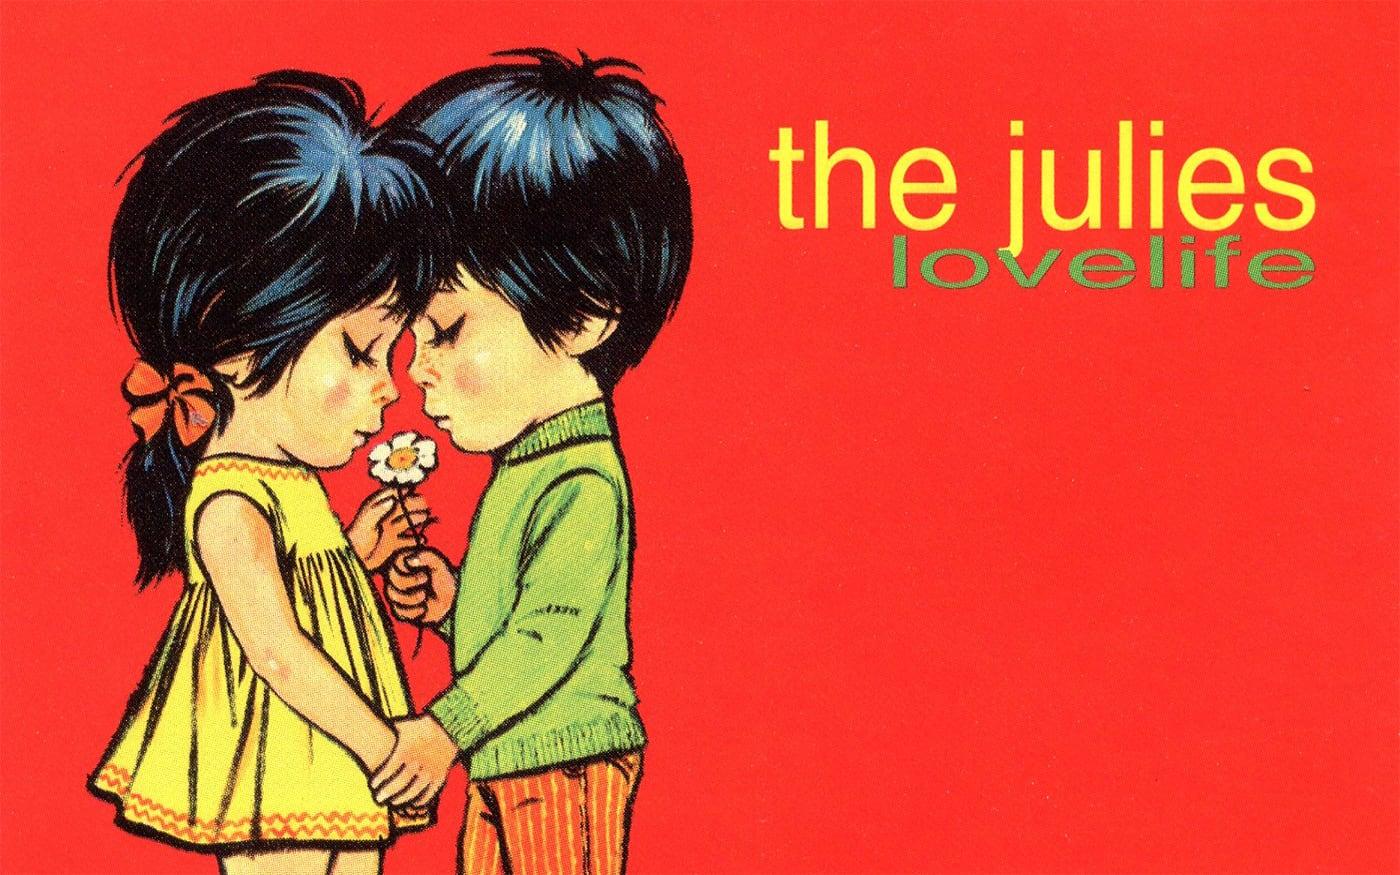 Lovelife - The Julies